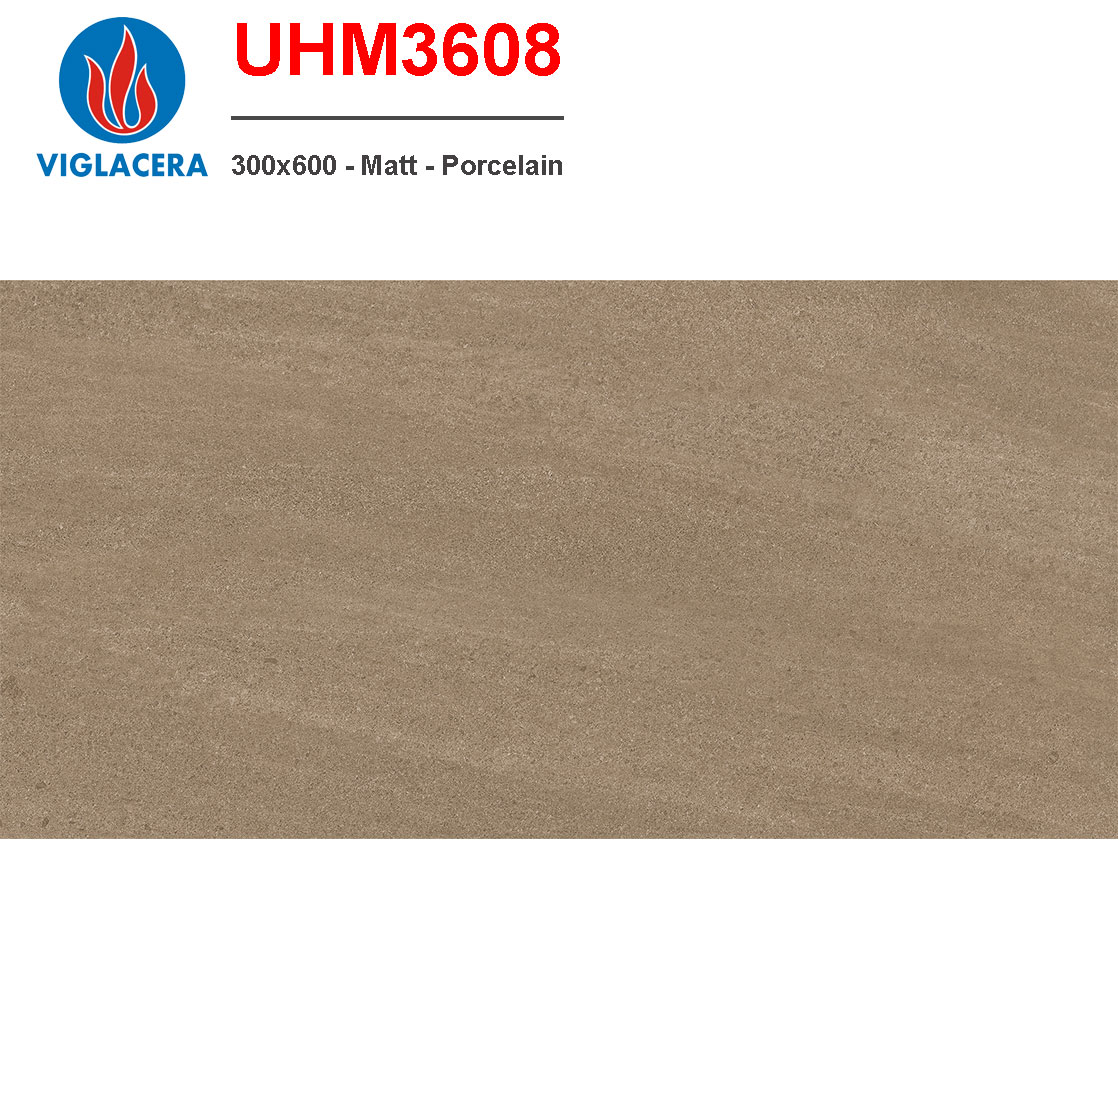 Gạch ốp tường 300x600 Viglacera UHM3608 giá rẻ